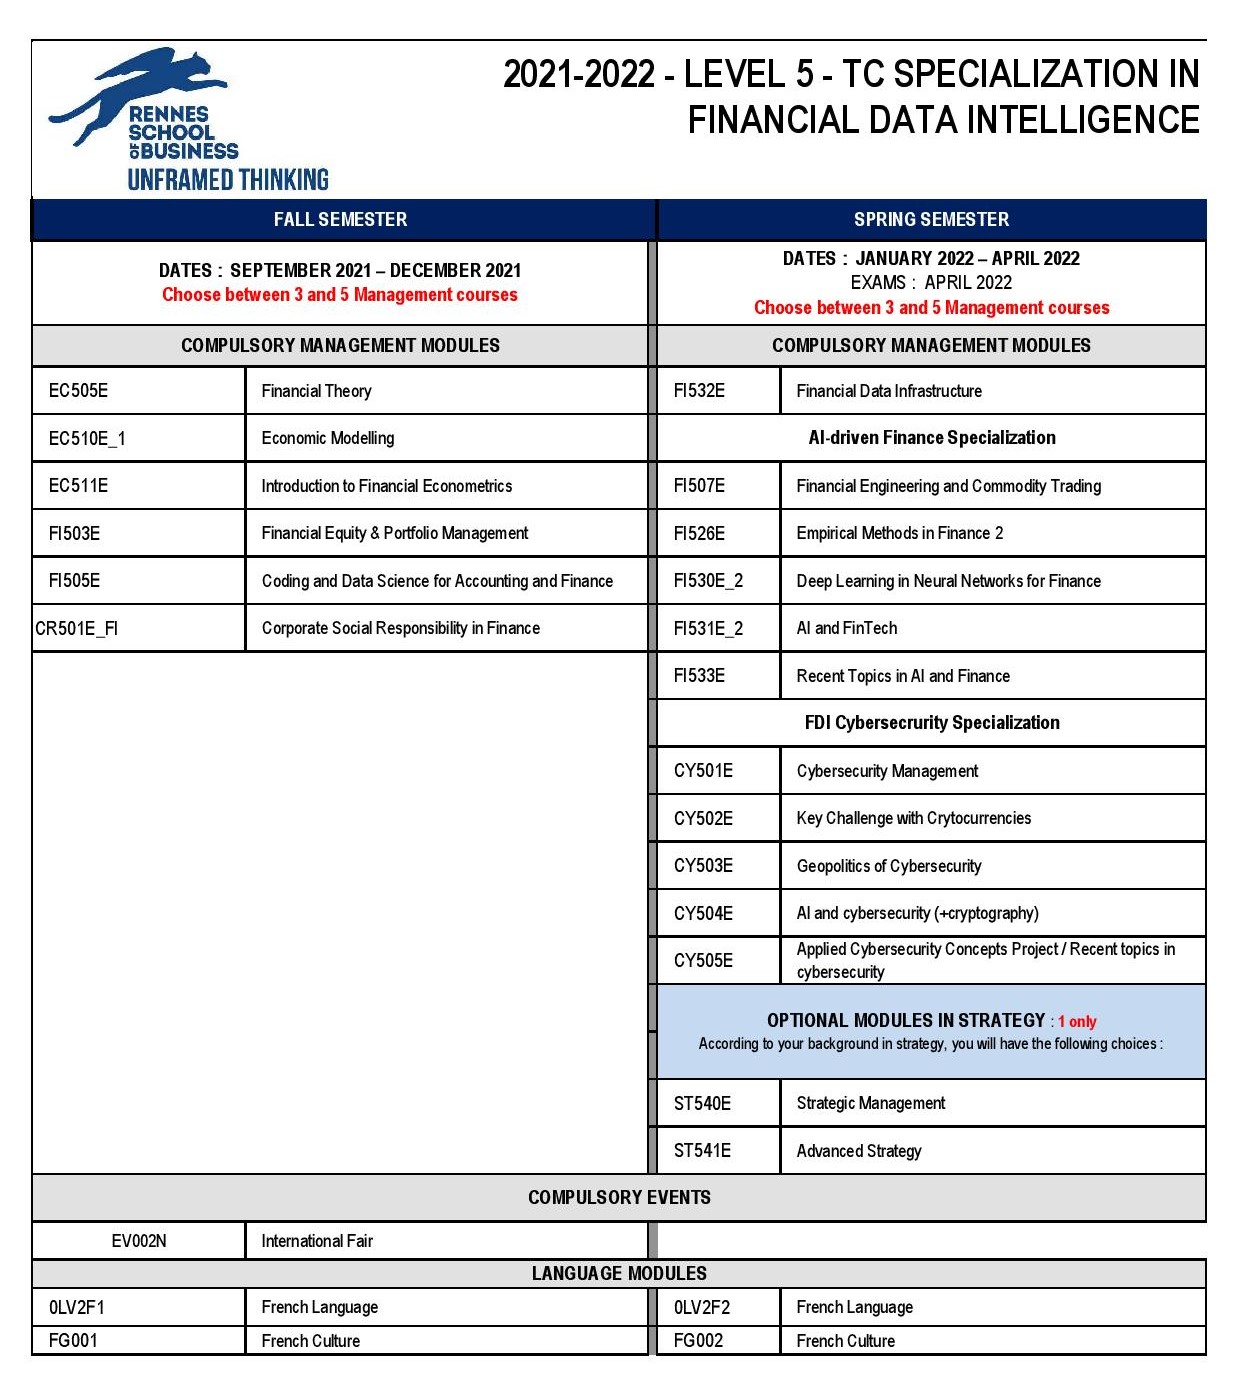 TC_FDI_Financial_Data_Intelligence.jpg